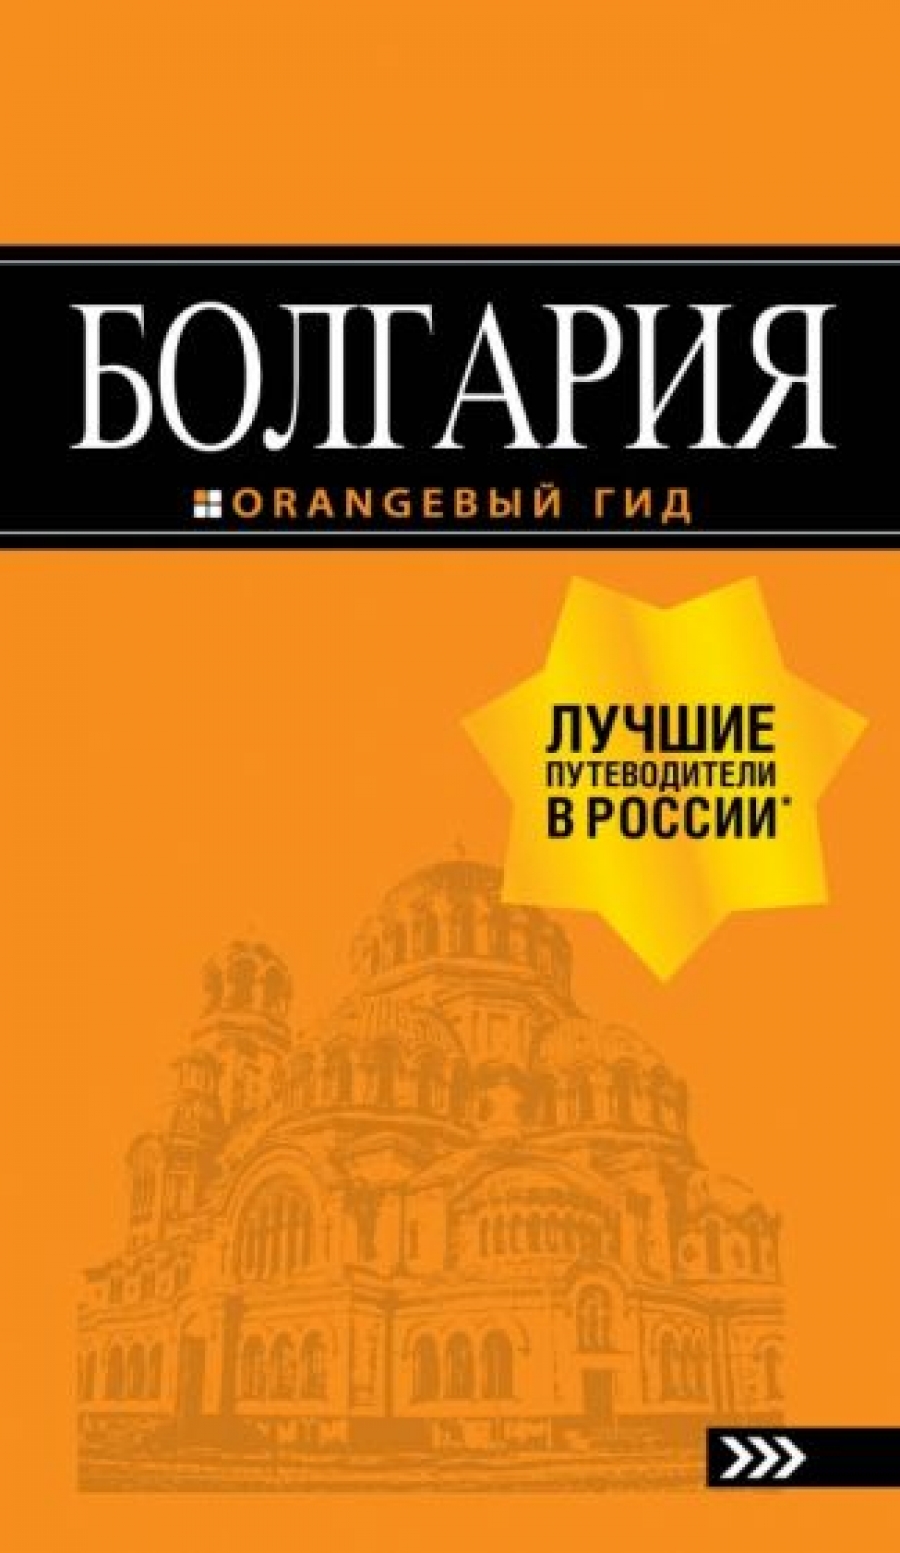 Тимофеев И.В. Болгария: путеводитель. 5-е изд., испр. и доп. 